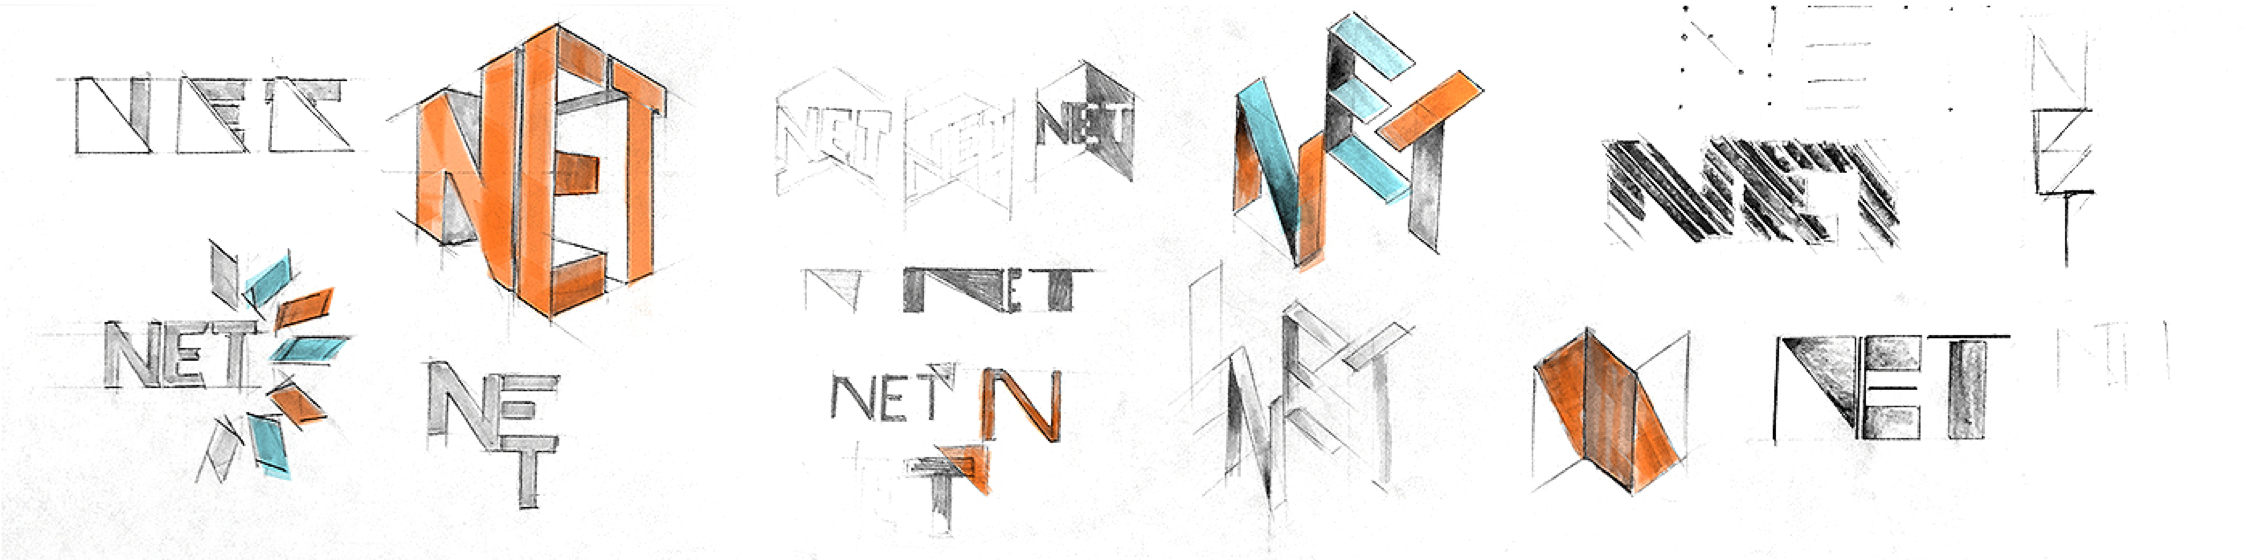 Sketches of original concepts for NET logo